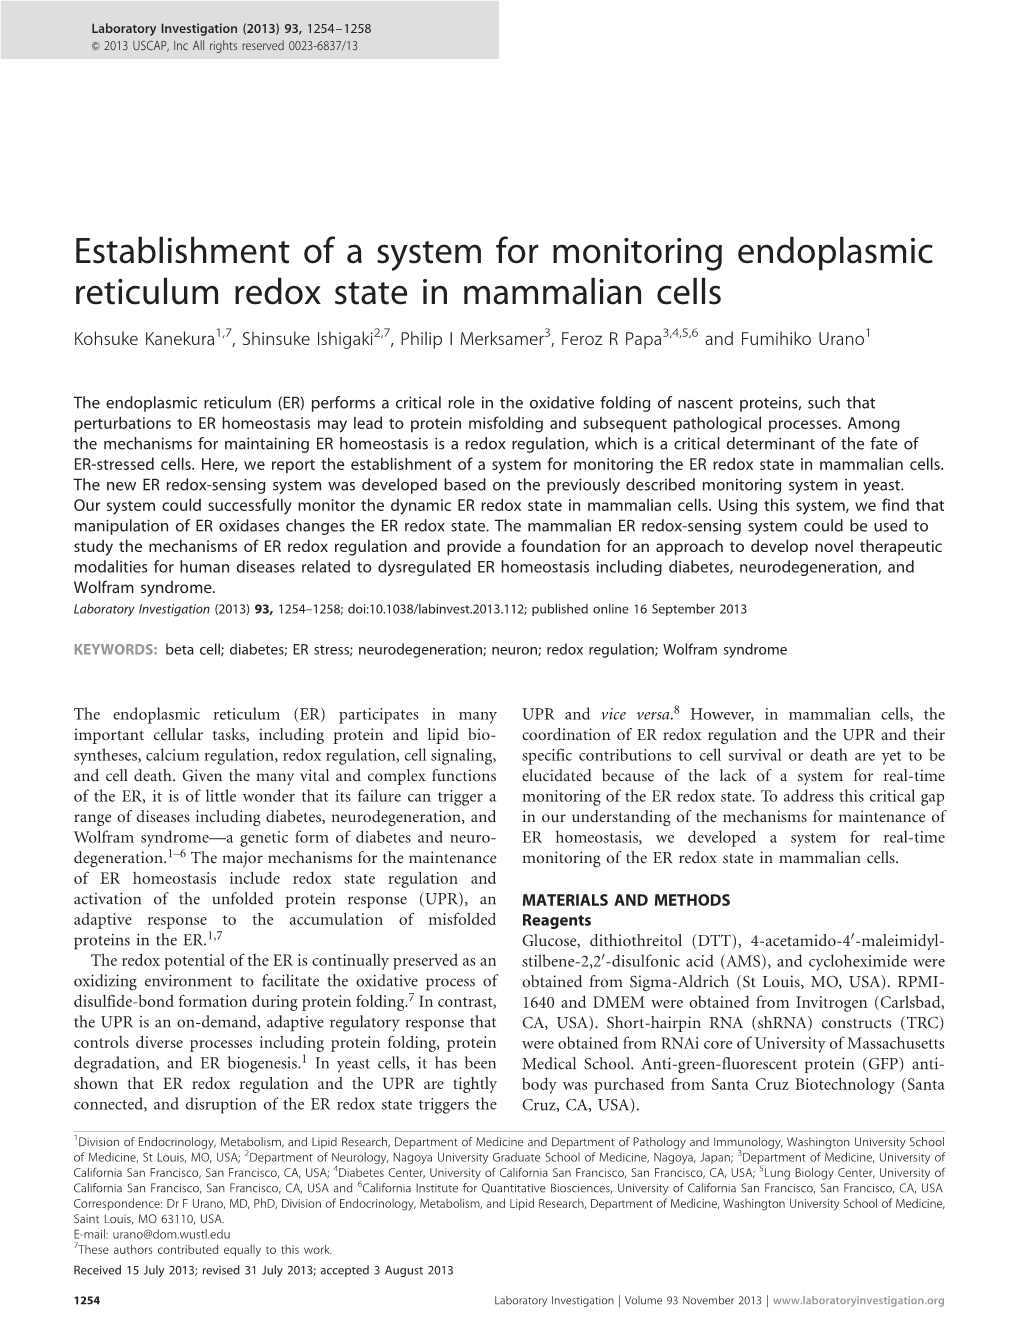 Establishment of a System for Monitoring Endoplasmic Reticulum